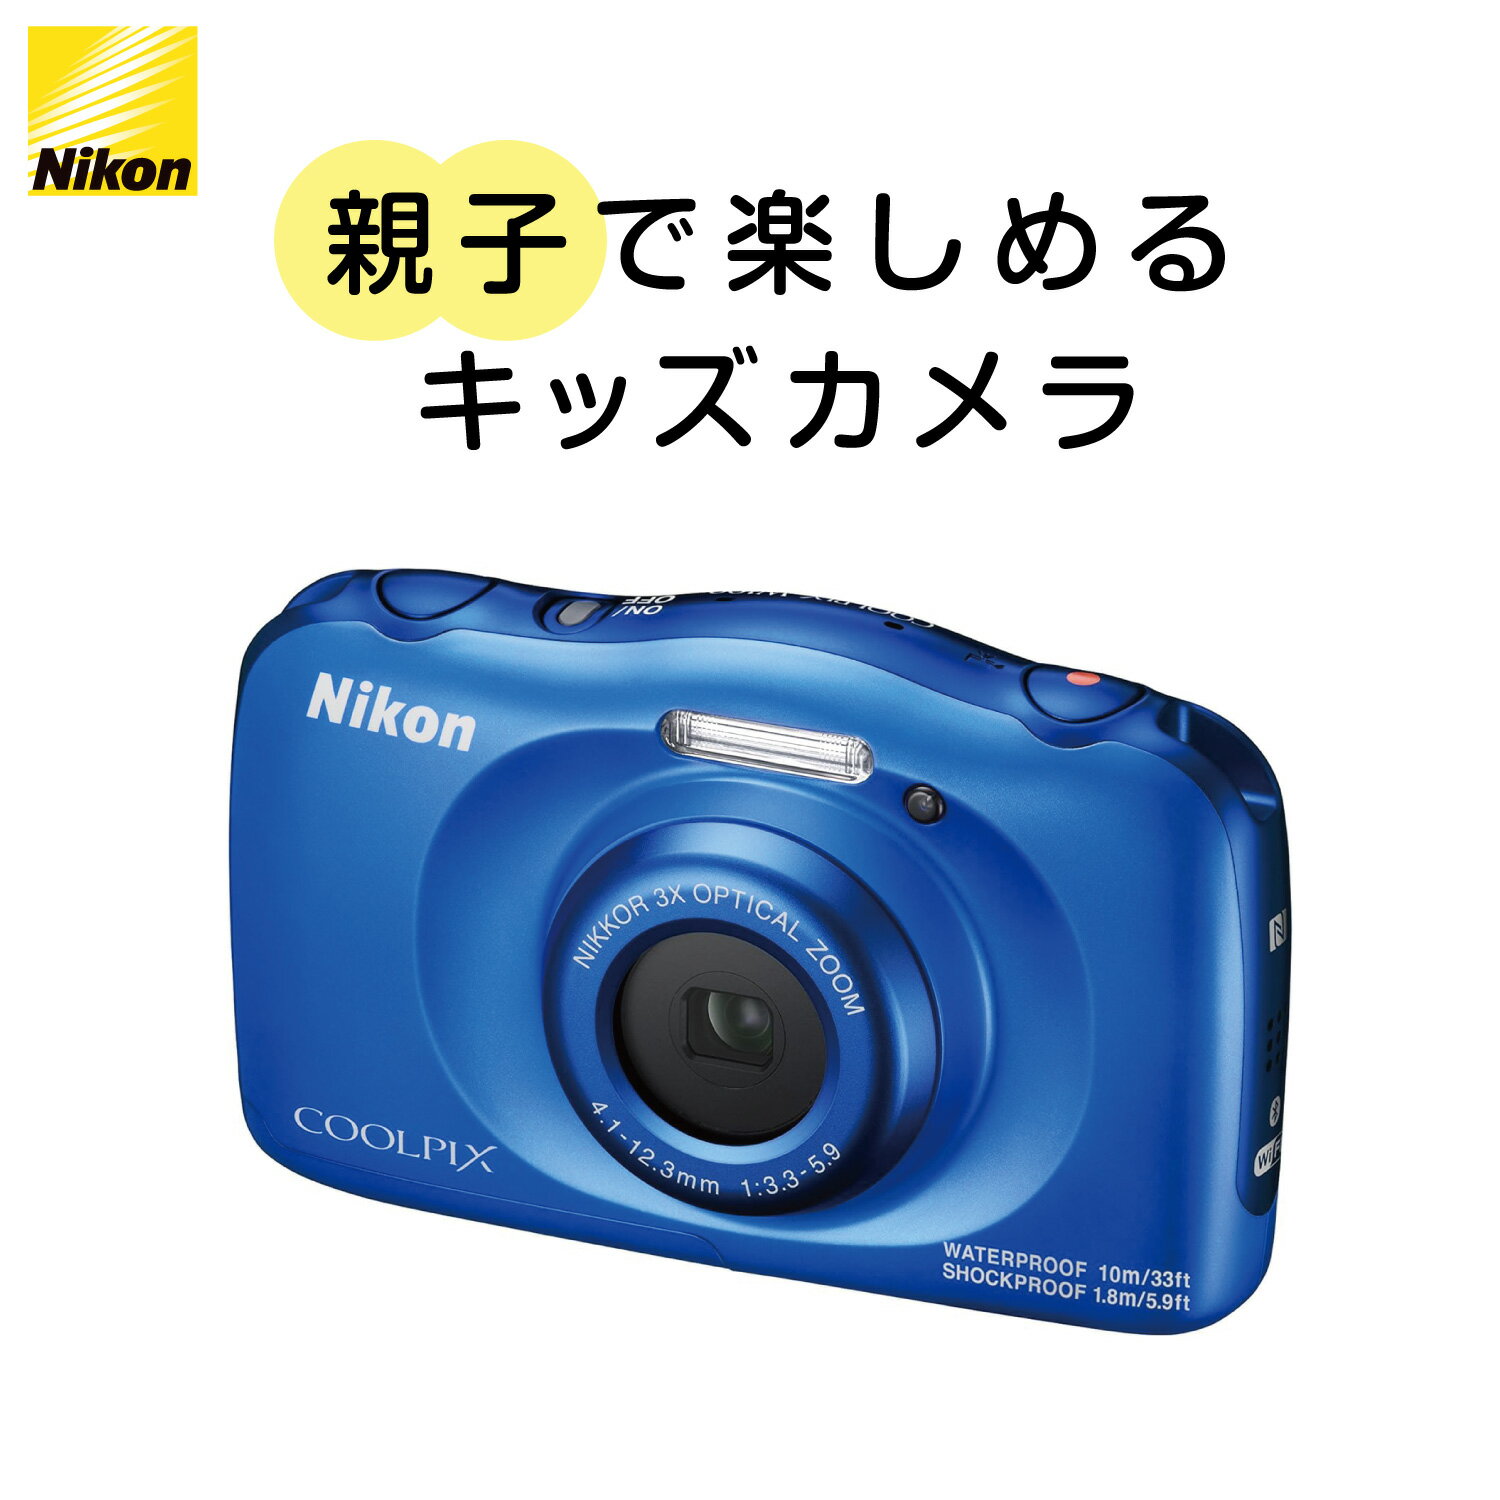 【10 OFFクーポン配布中】Nikon デジタルカメラ COOLPIX (クールピクス) W100 ブルー 防水10m アウトドア W100BL ニコン デジカメ Wi-Fi Bluetooth NFC microHDMI 中古カメラ 中古 カメラ